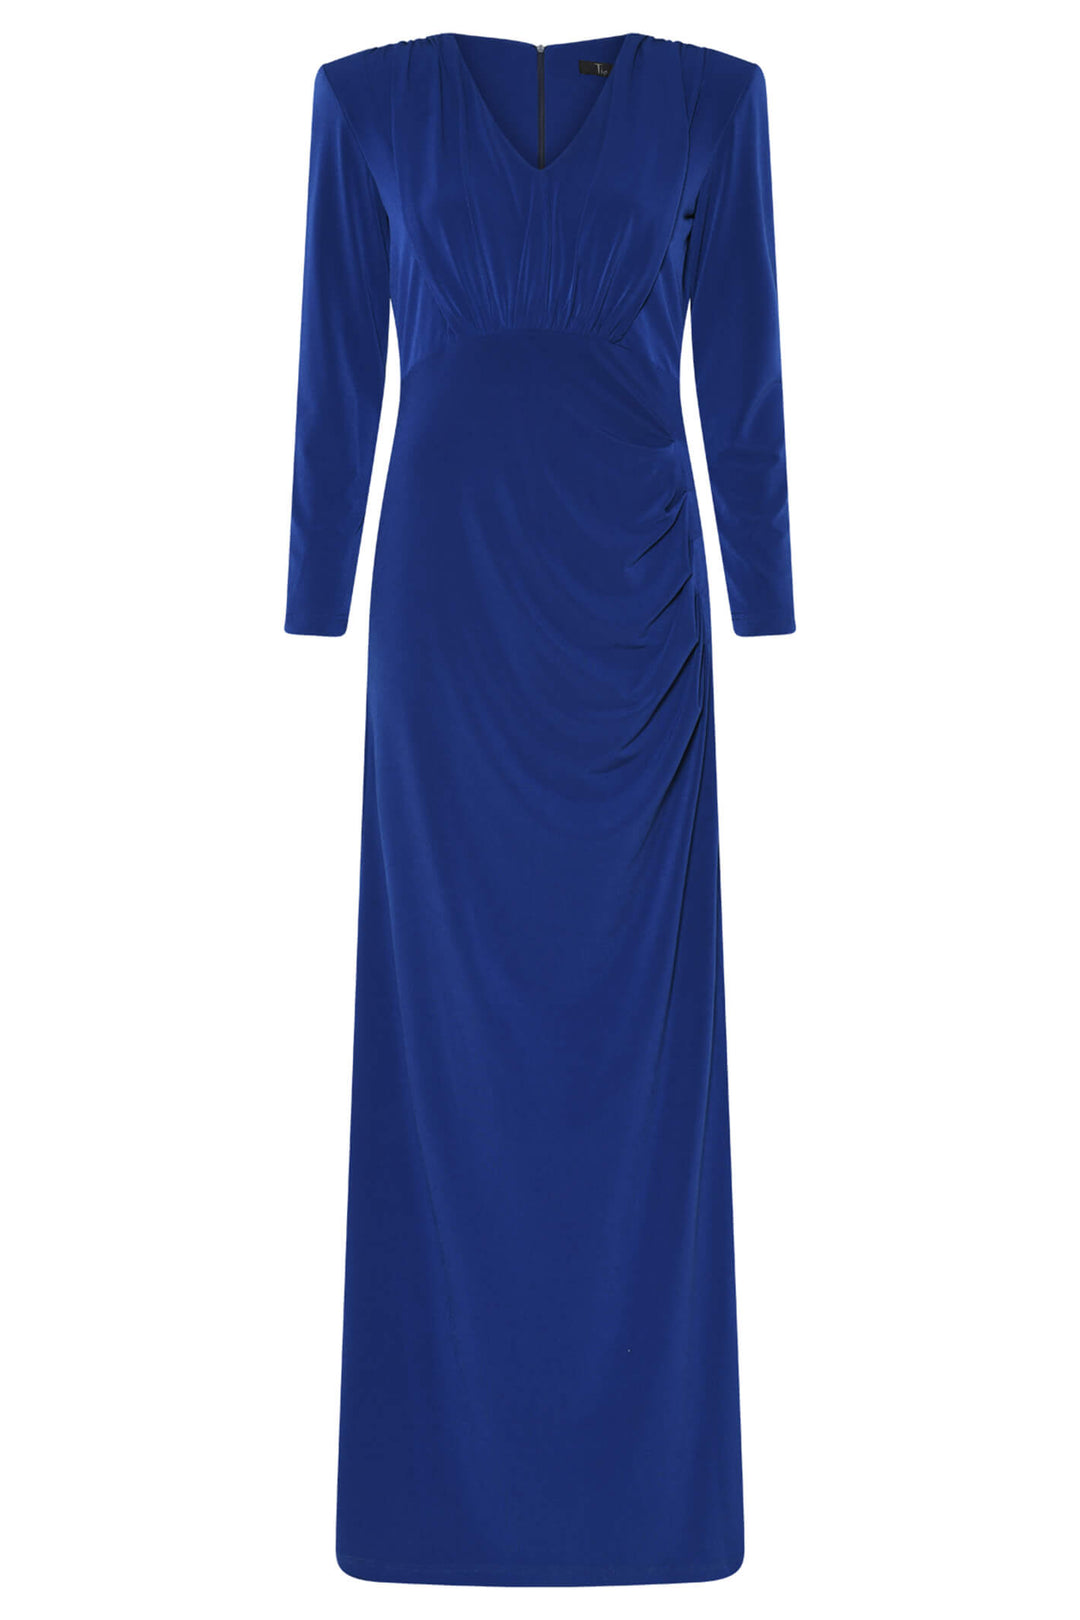 Tia 78673 Cobalt Blue Long Sleeve Evening Dress - Dotique Chesterfield